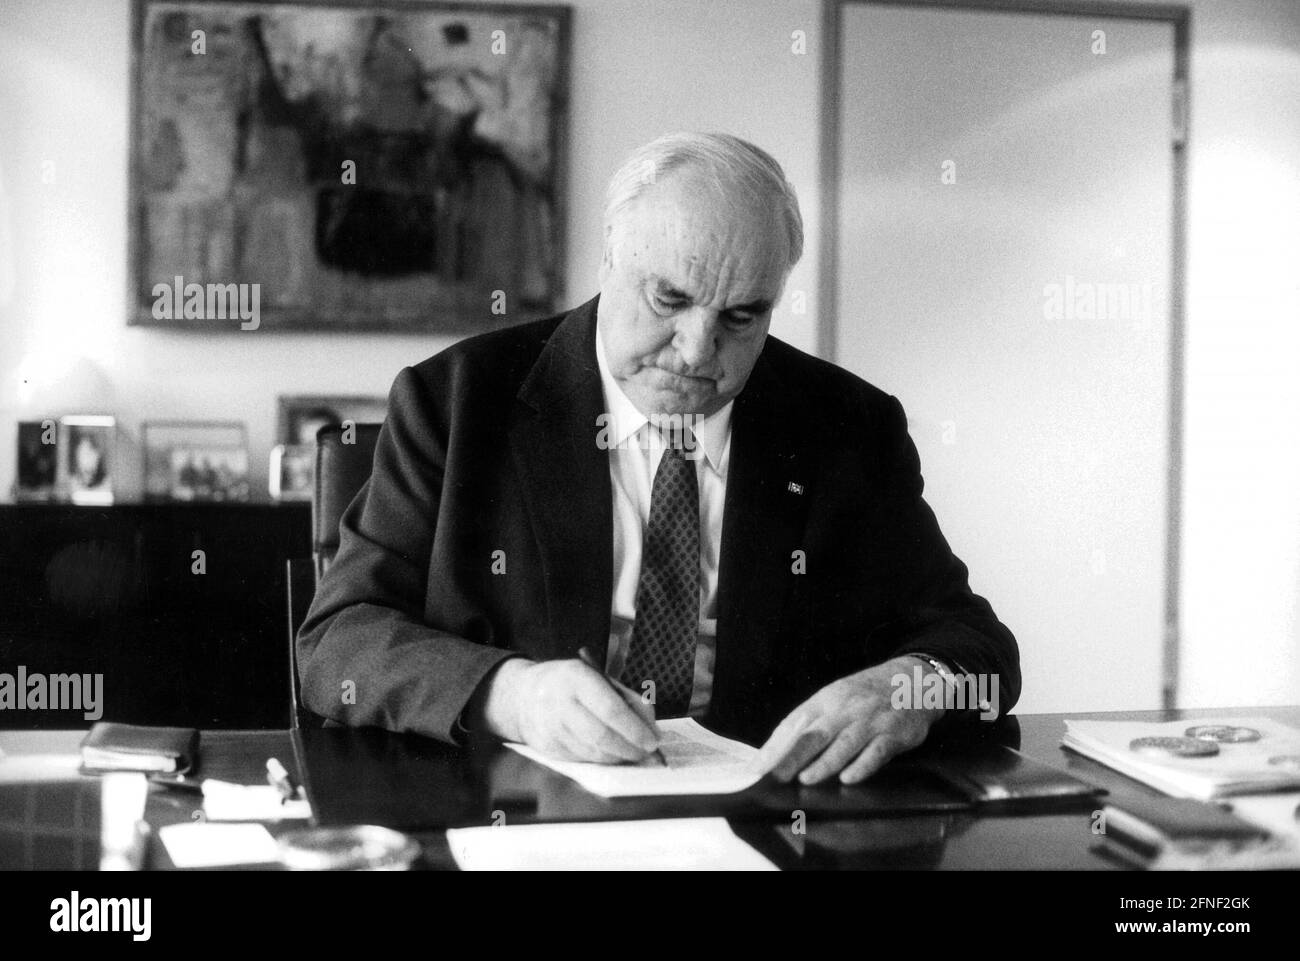 Der ehemalige deutsche Bundeskanzler Helmut Kohl in seinem Berliner Büro, nachdem er die Öffentlichkeit über die Existenz von Schwarzkonten der CDU und den Erhalt illegaler Spenden informiert hatte. [Automatisierte Übersetzung] Stockfoto